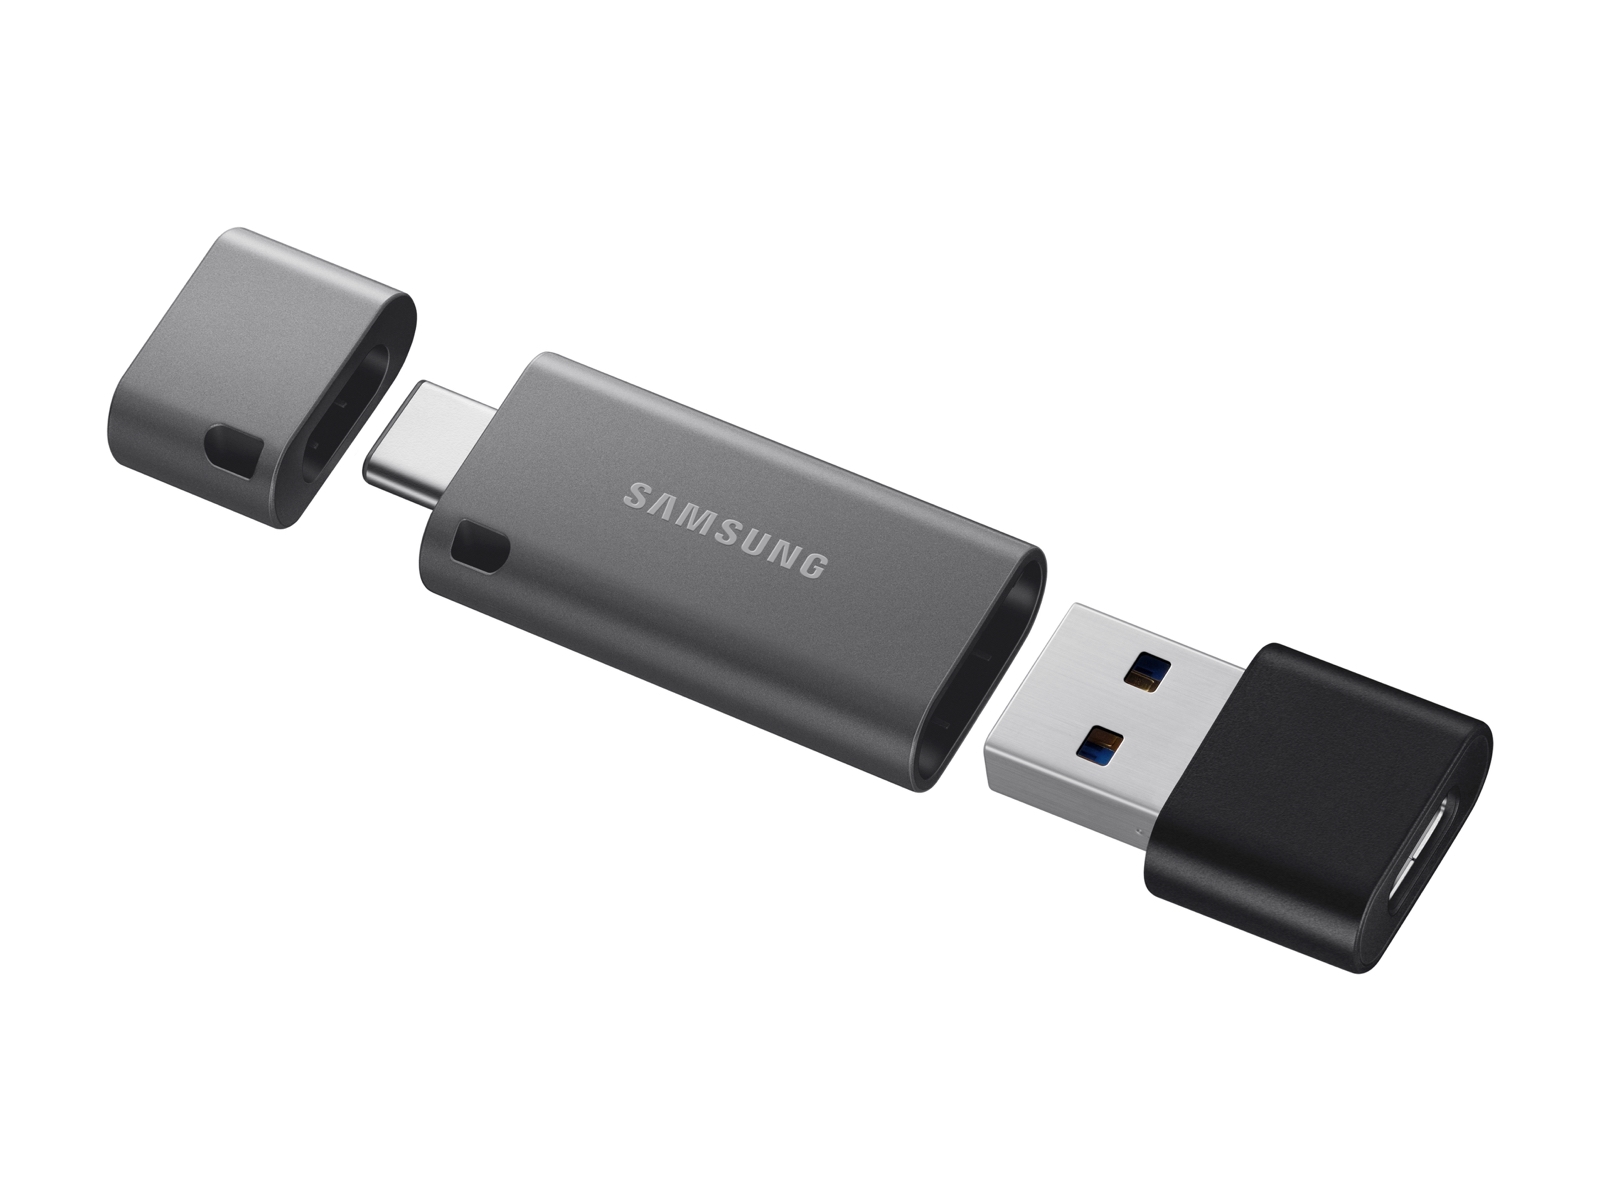 CLE USB SAMSUNG 64G USB 3.1 TYPE C - VITESSE LECTURE JUSQU'A 400Mo/S -  MUF-64DA/